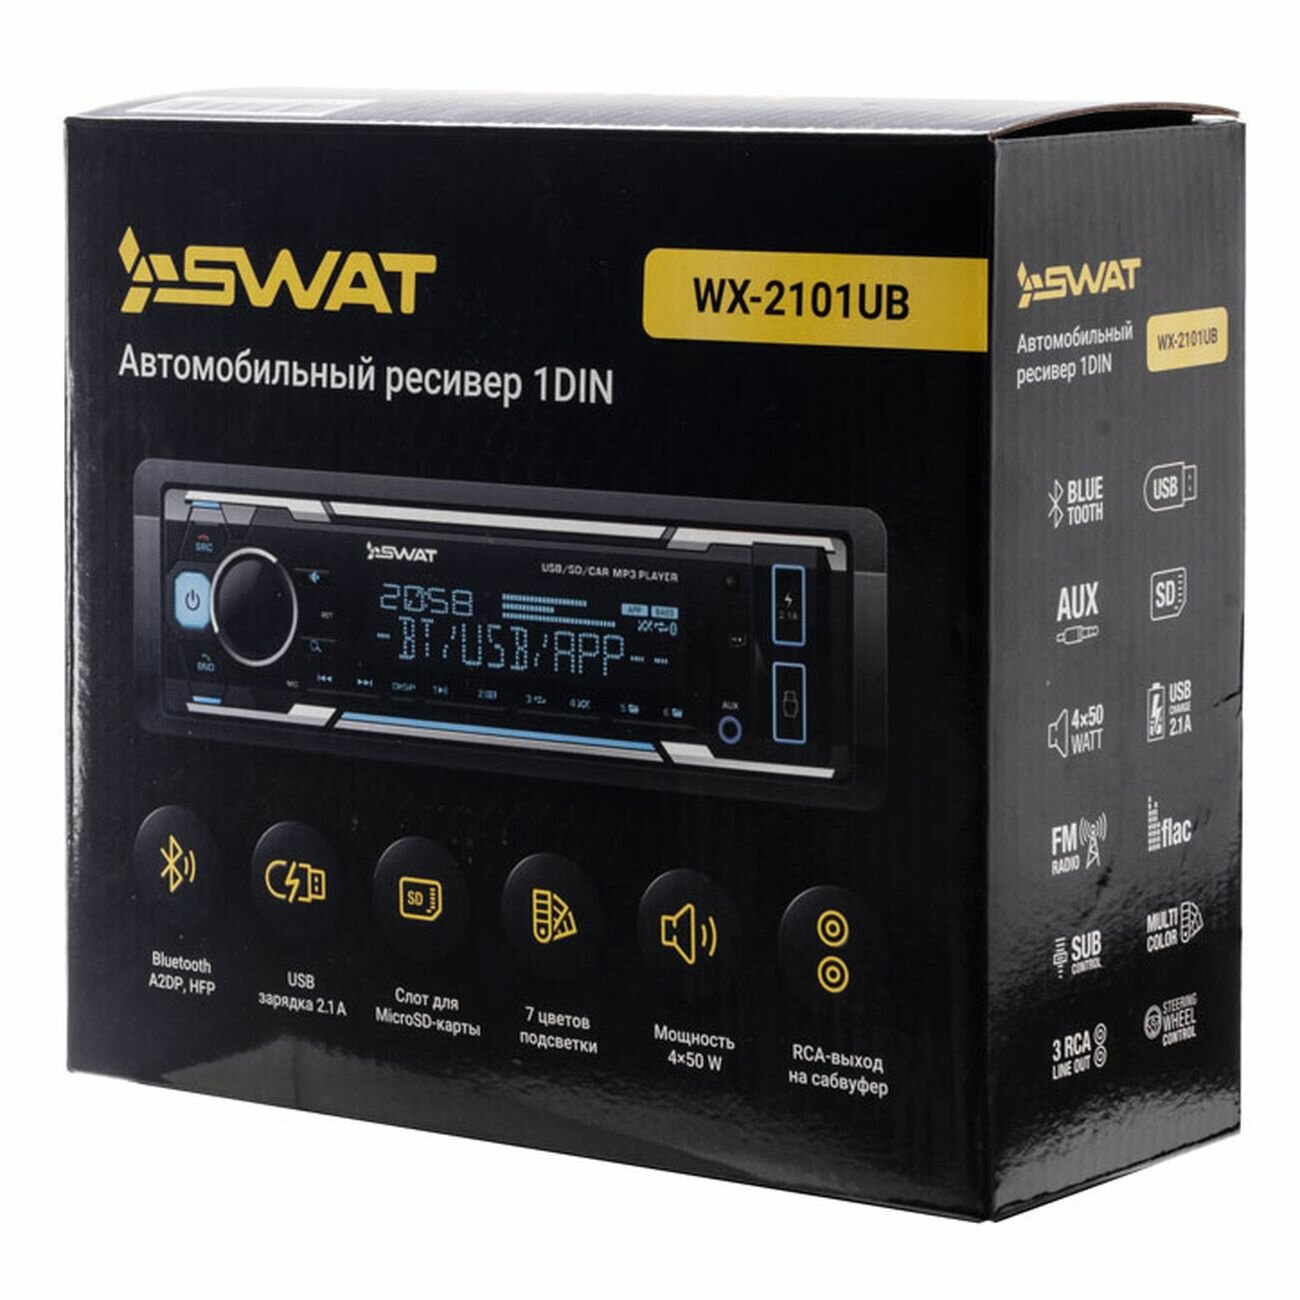 Автомагнитола Swat WX-2101UB 1DIN 4x50Вт - фото №3